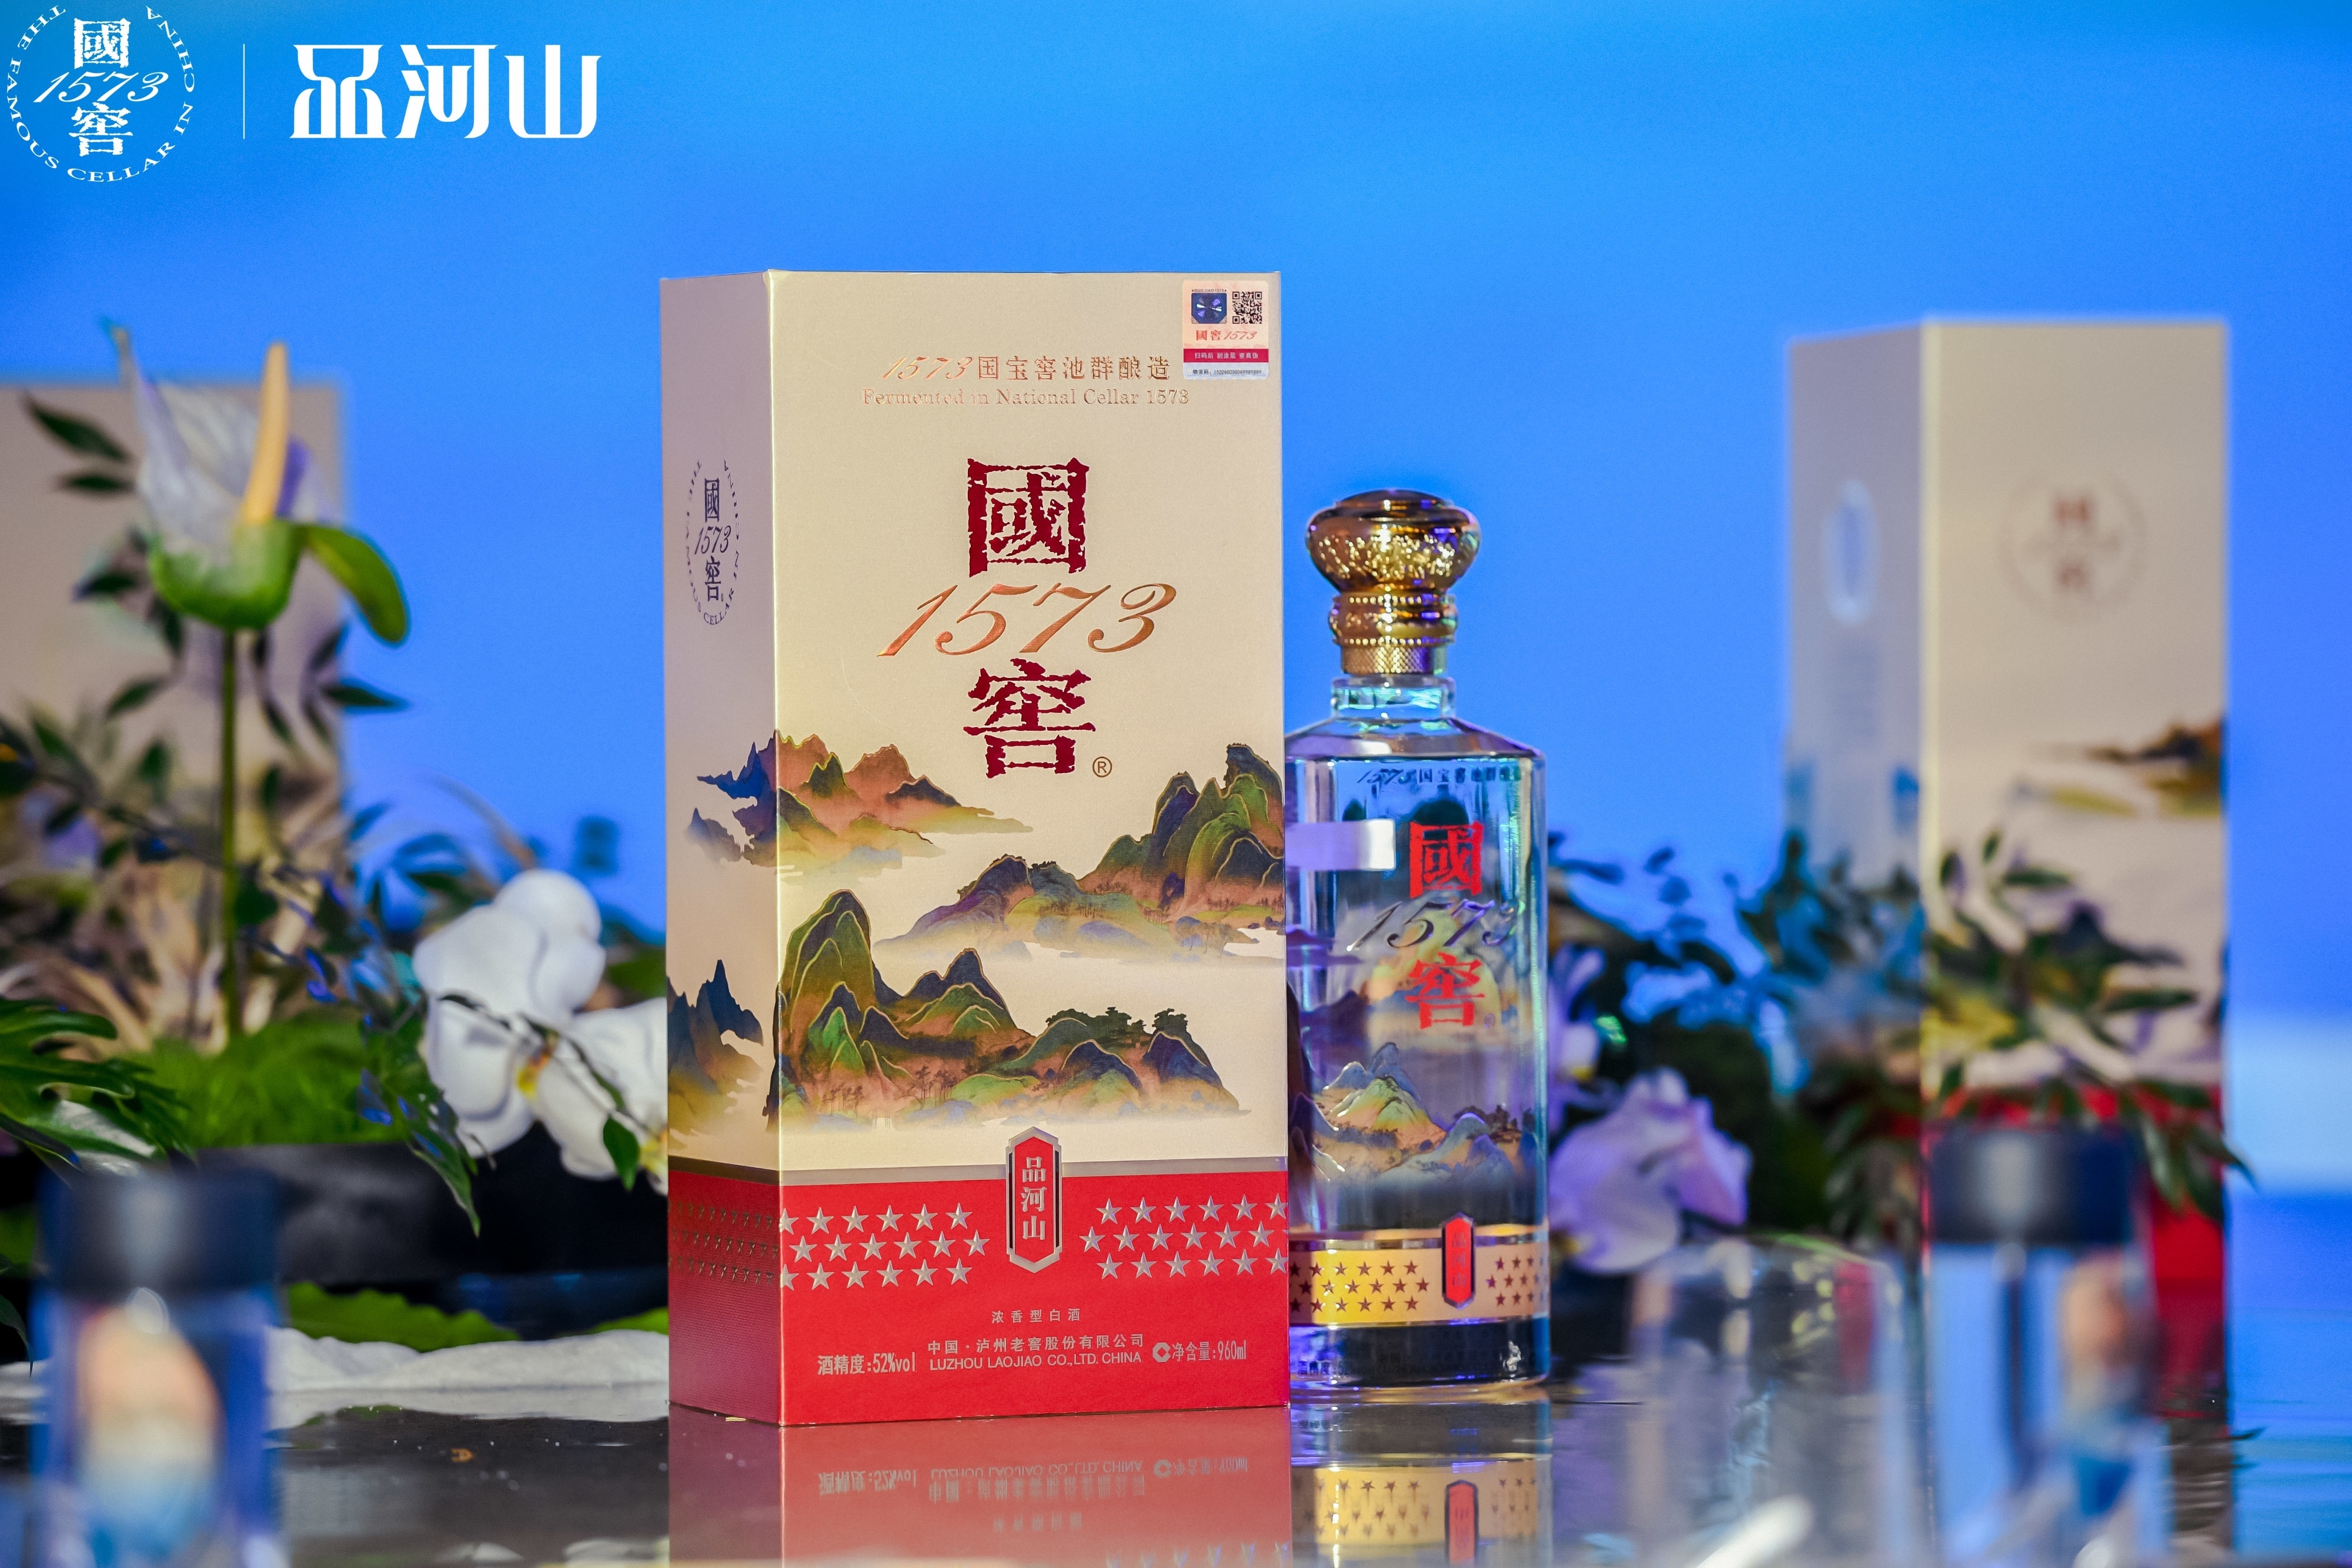 米乐M6官网|国窖1573品河山在蓉首发 演绎中国白酒与中国顶级文化艺术融合之美(图1)